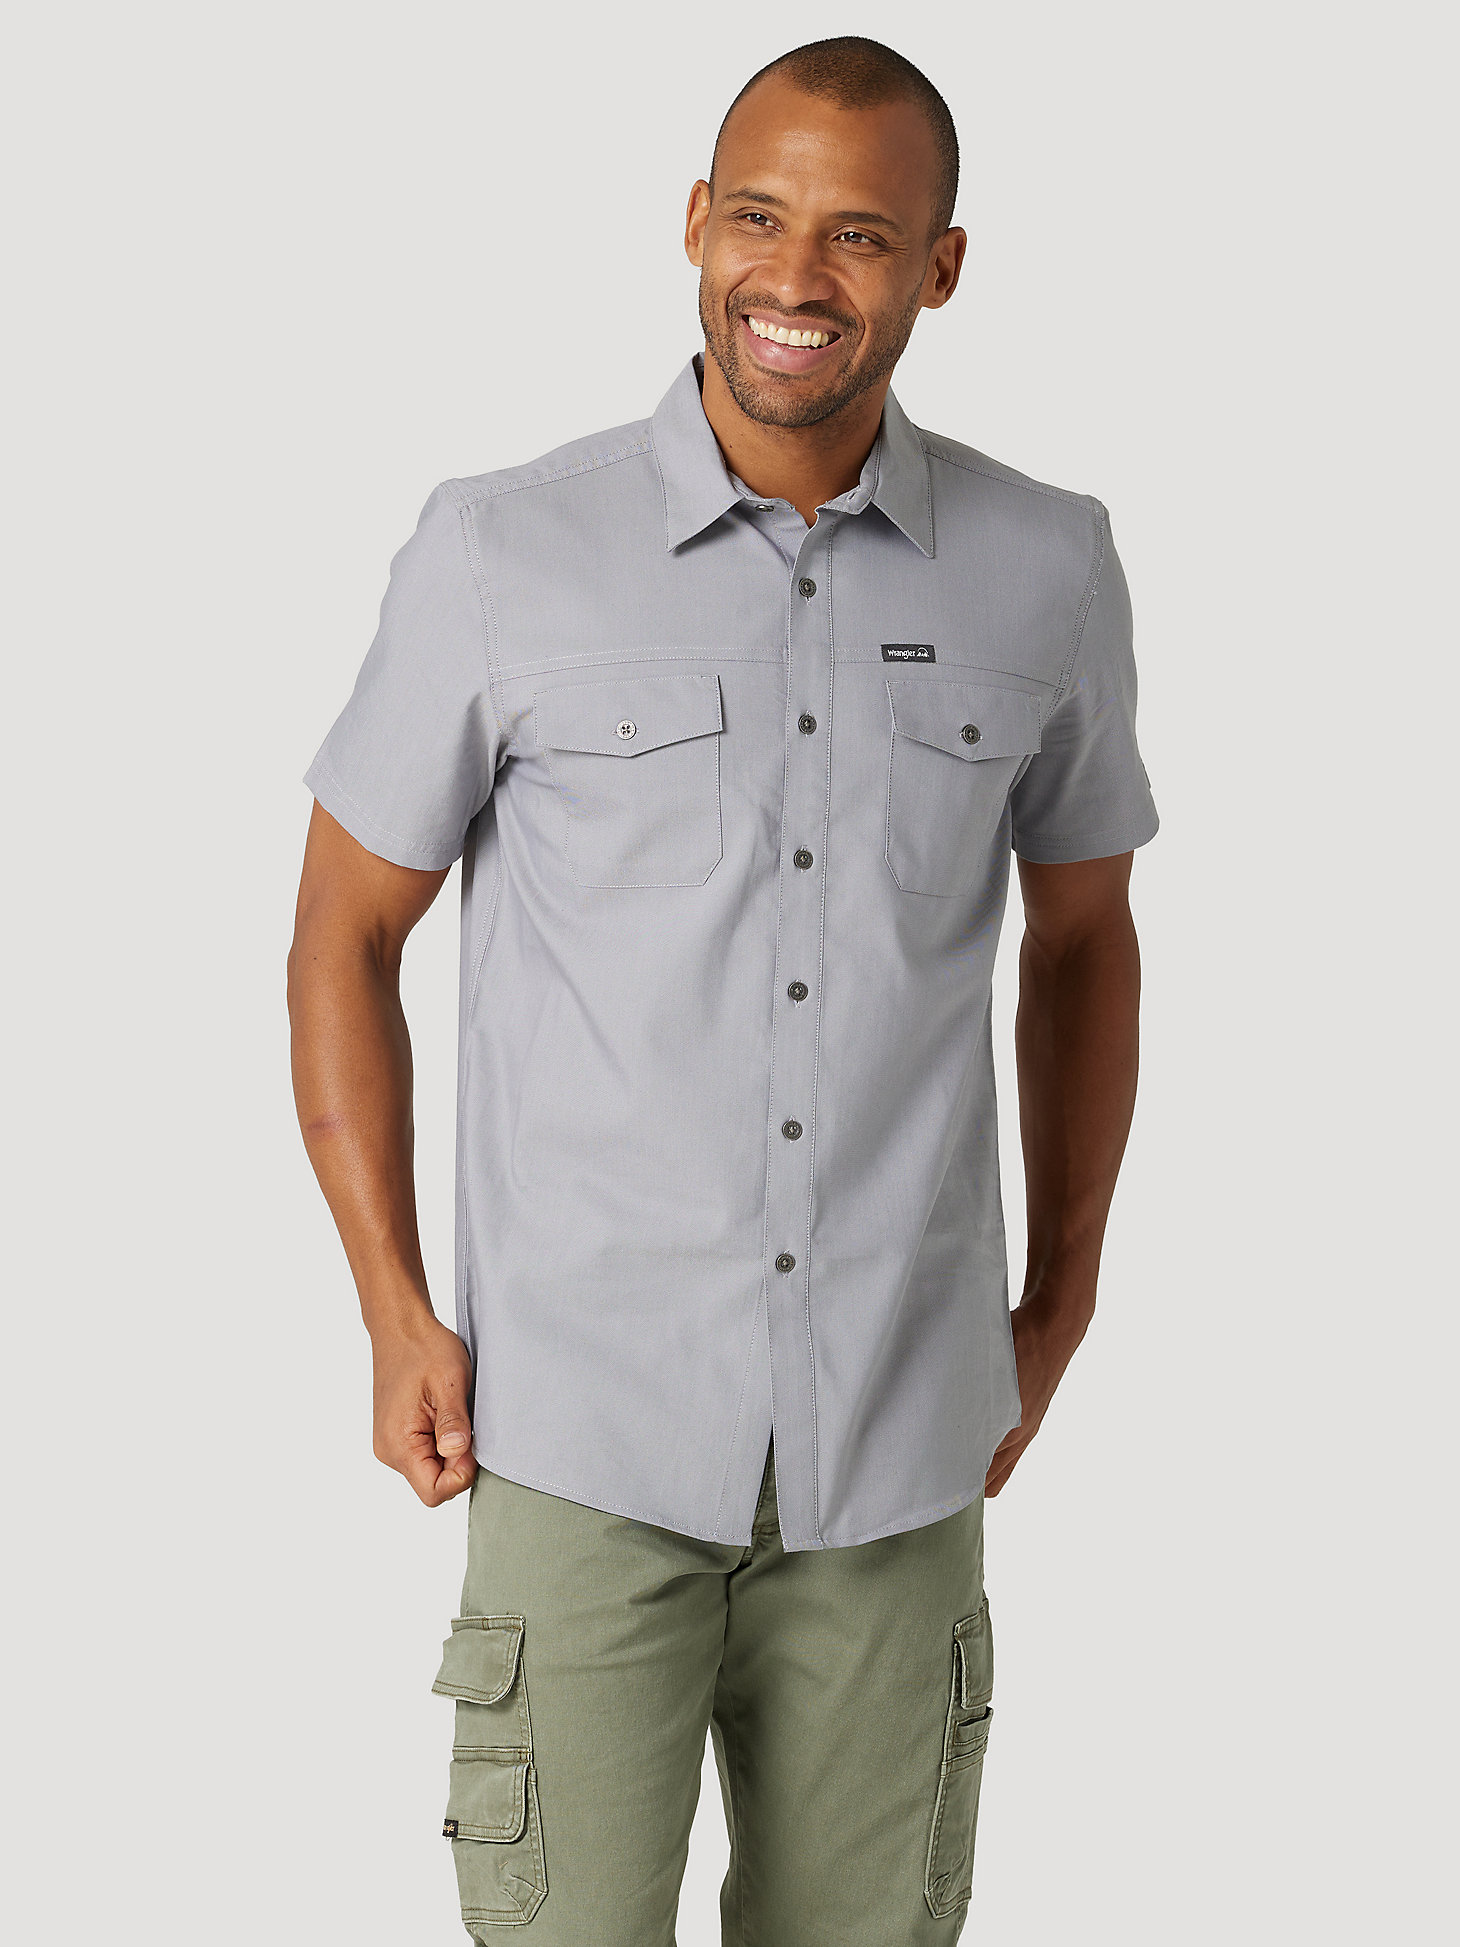 Men's Outdoor Short Sleeve Camp Shirt